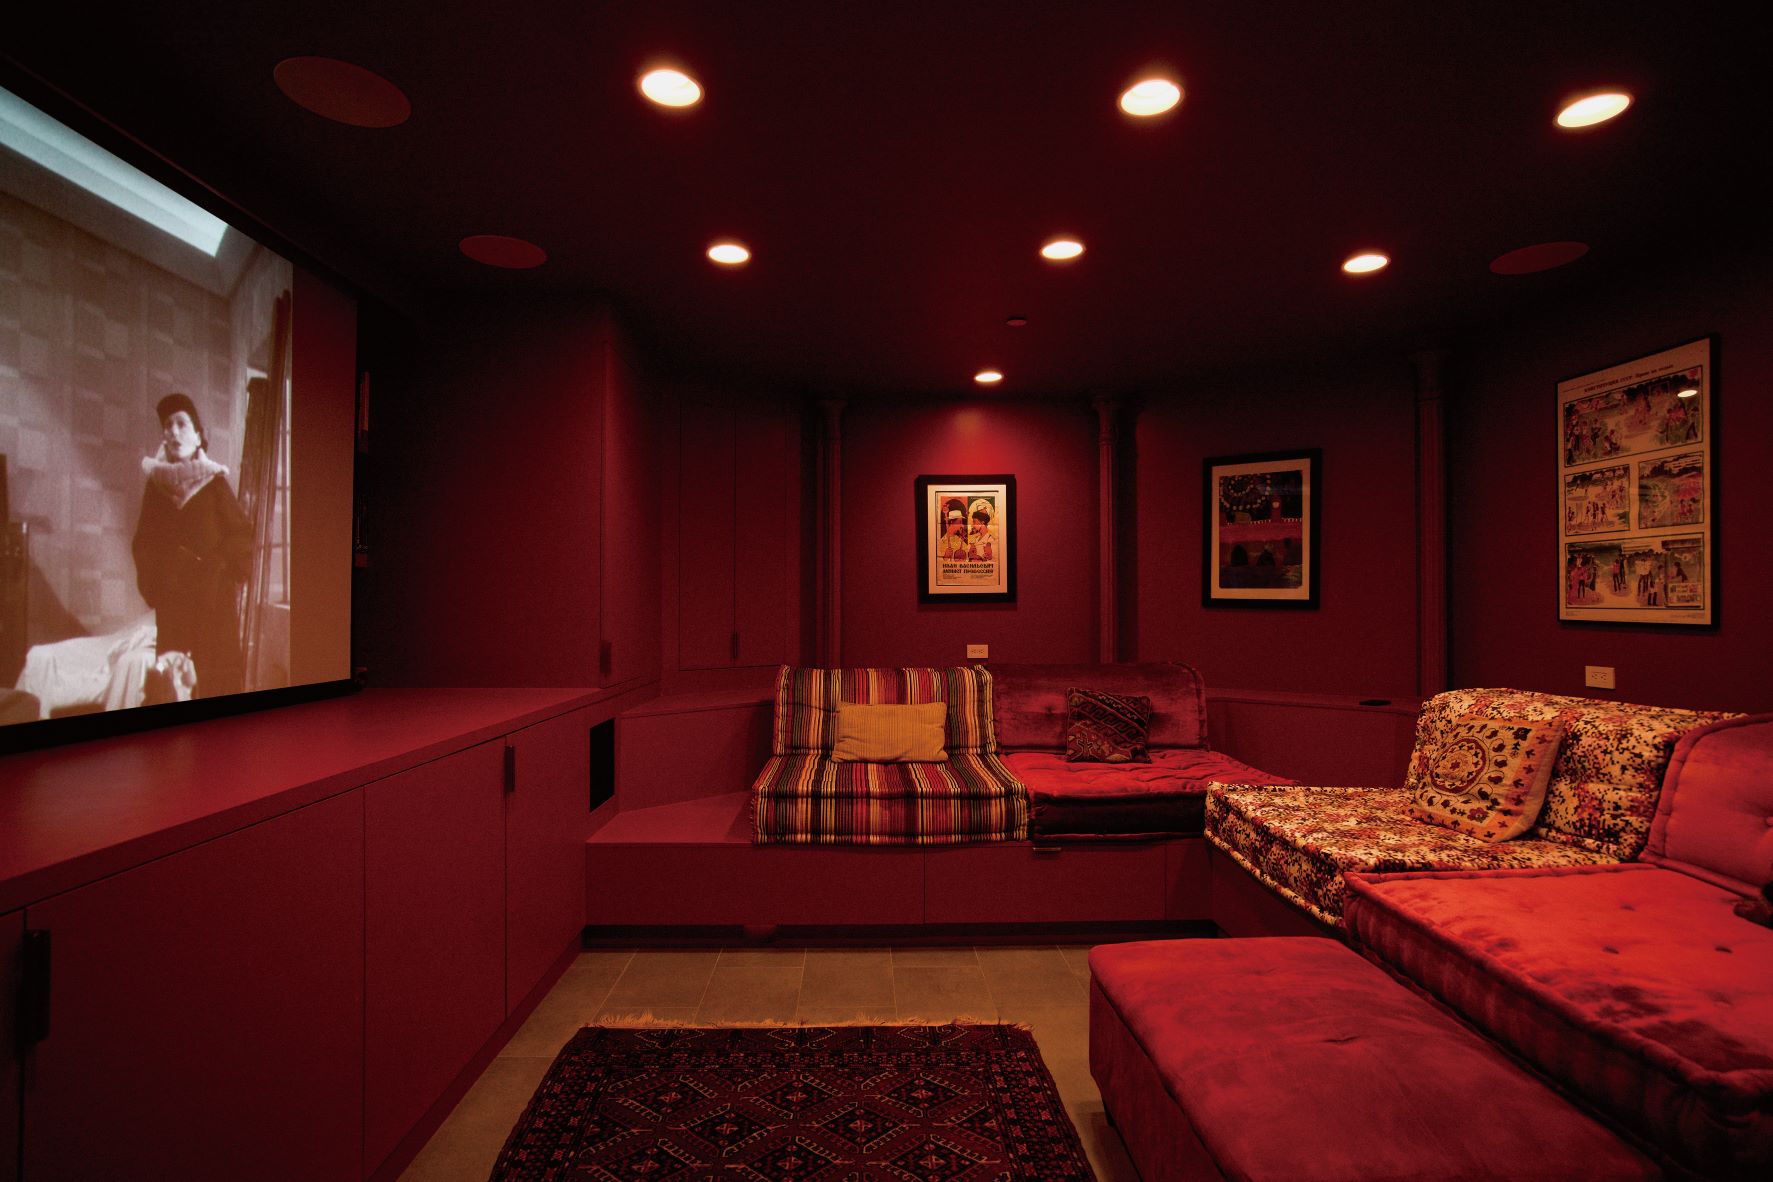 以往作为长工与佣人使用的地下室，如今改建成为一家六口的电影院，扩大居家娱乐与舒适度。